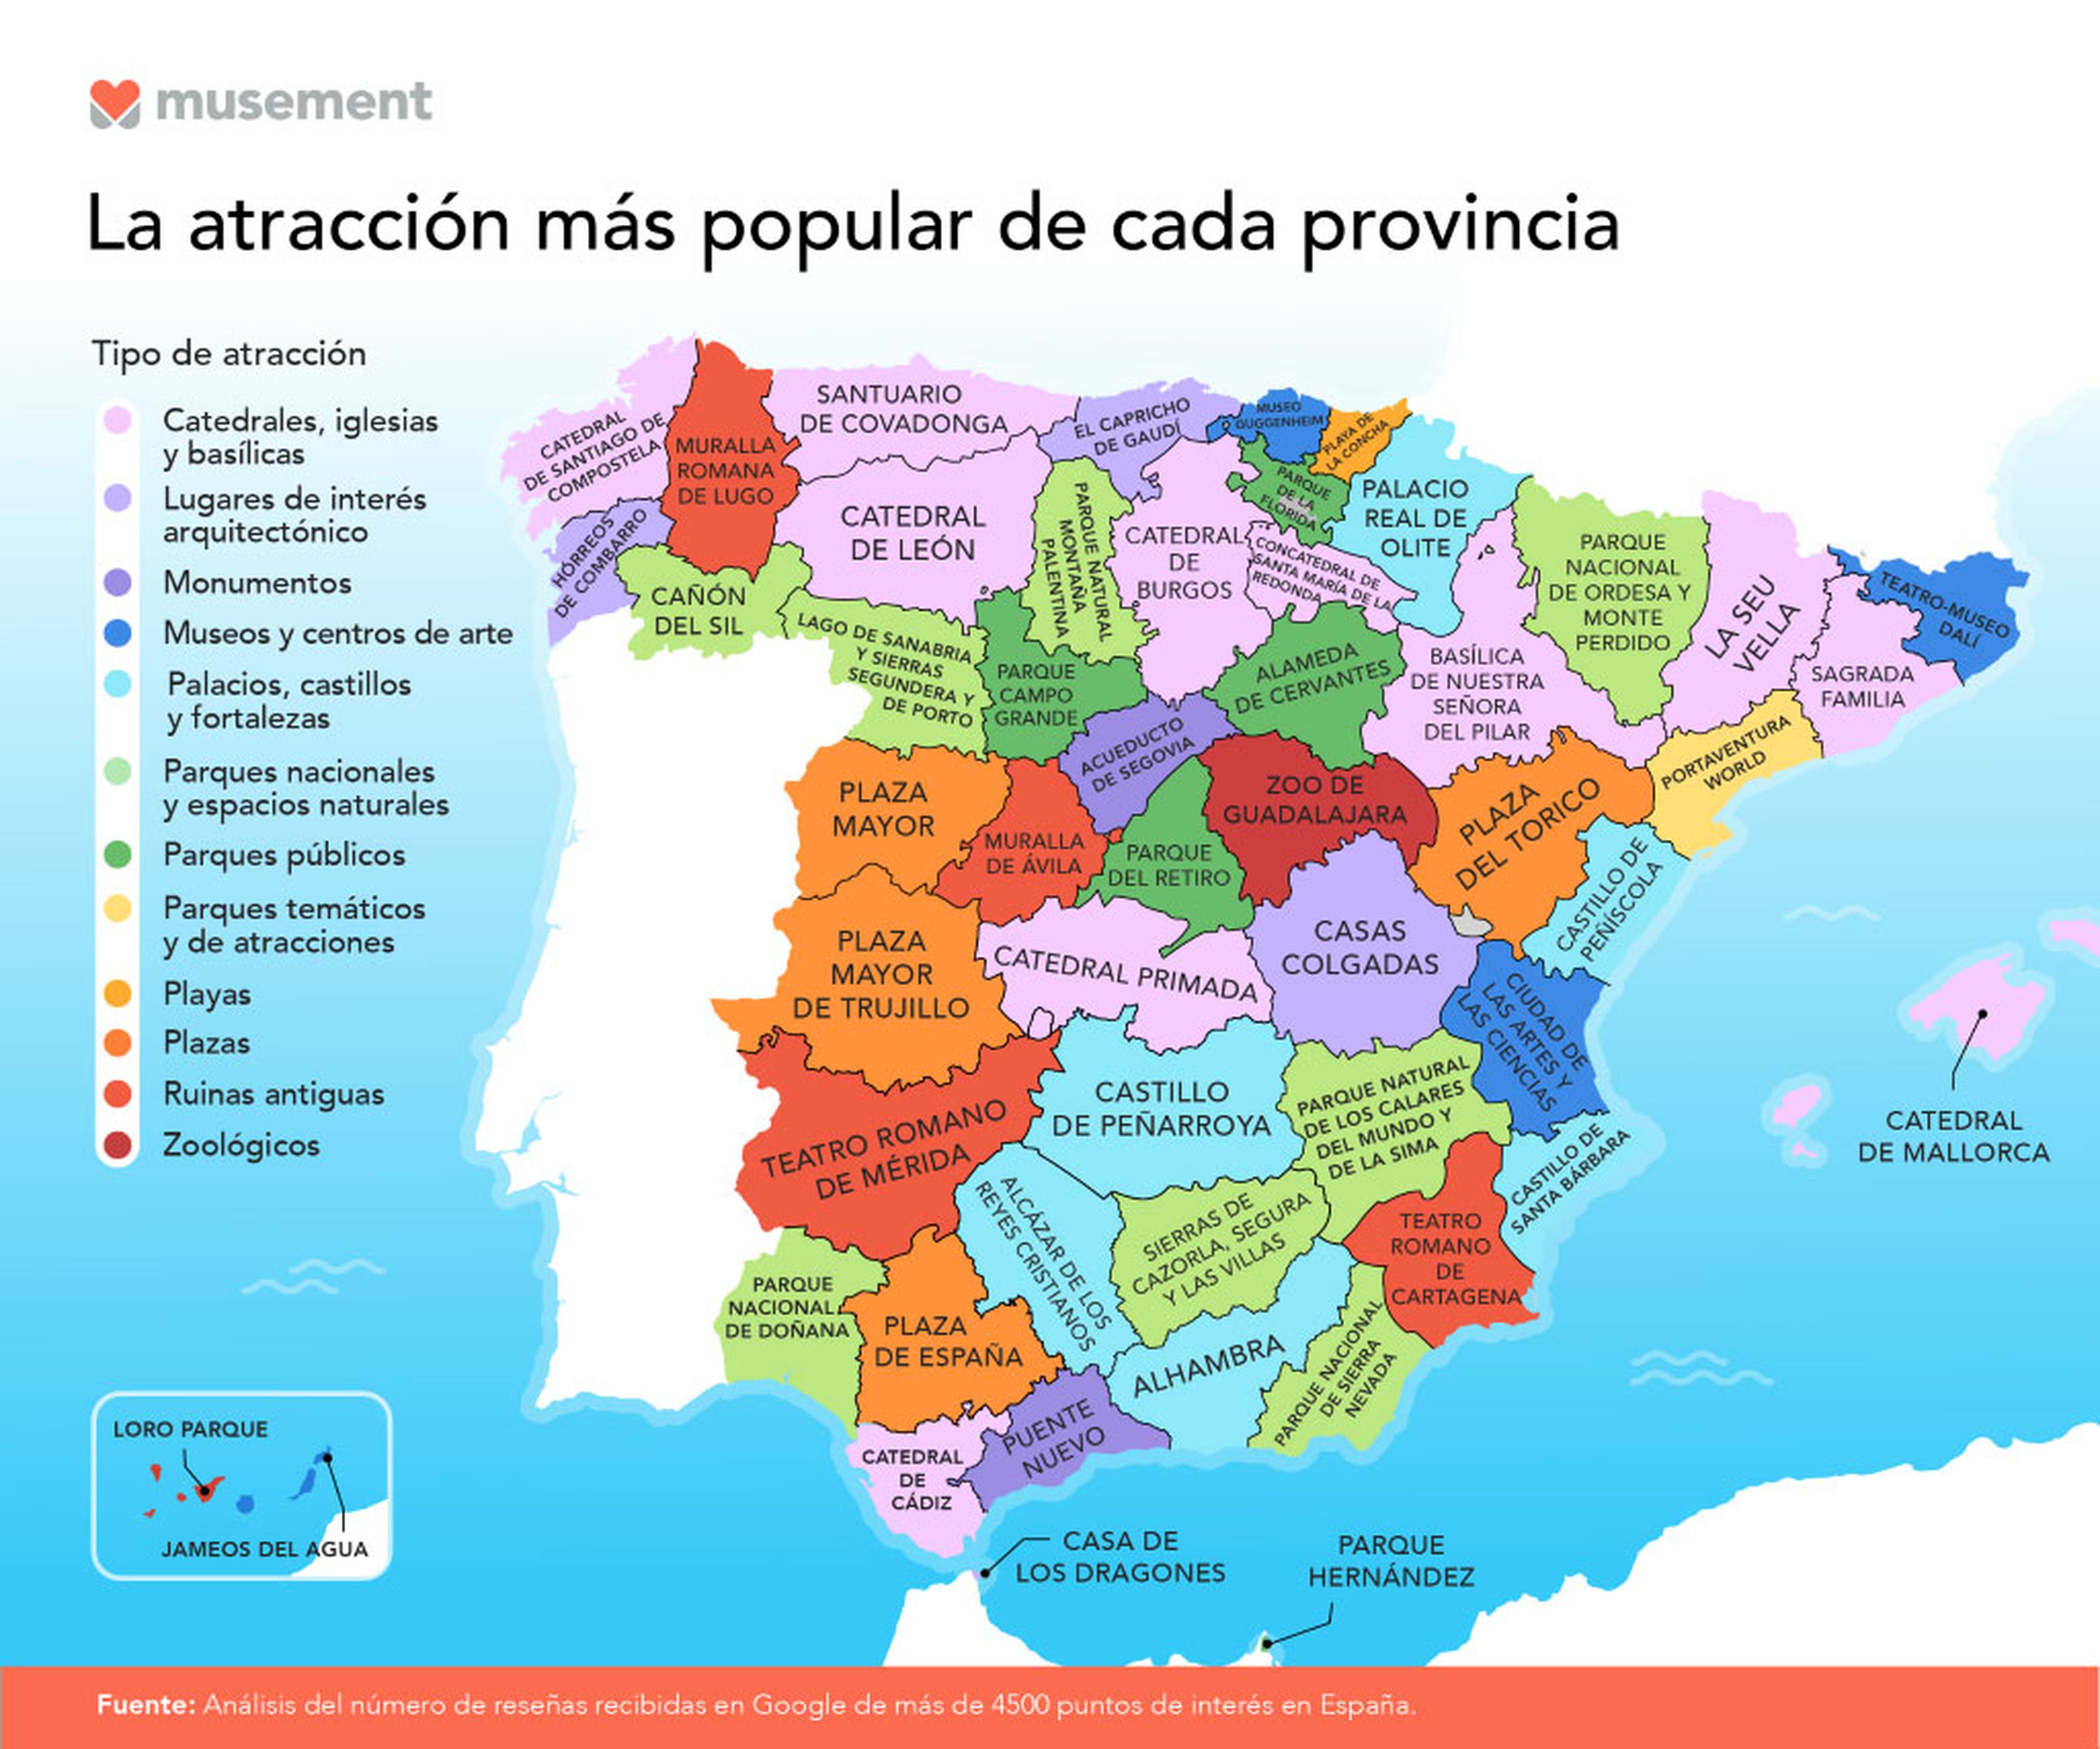 Atracciones turísticas más populares por provincia en España